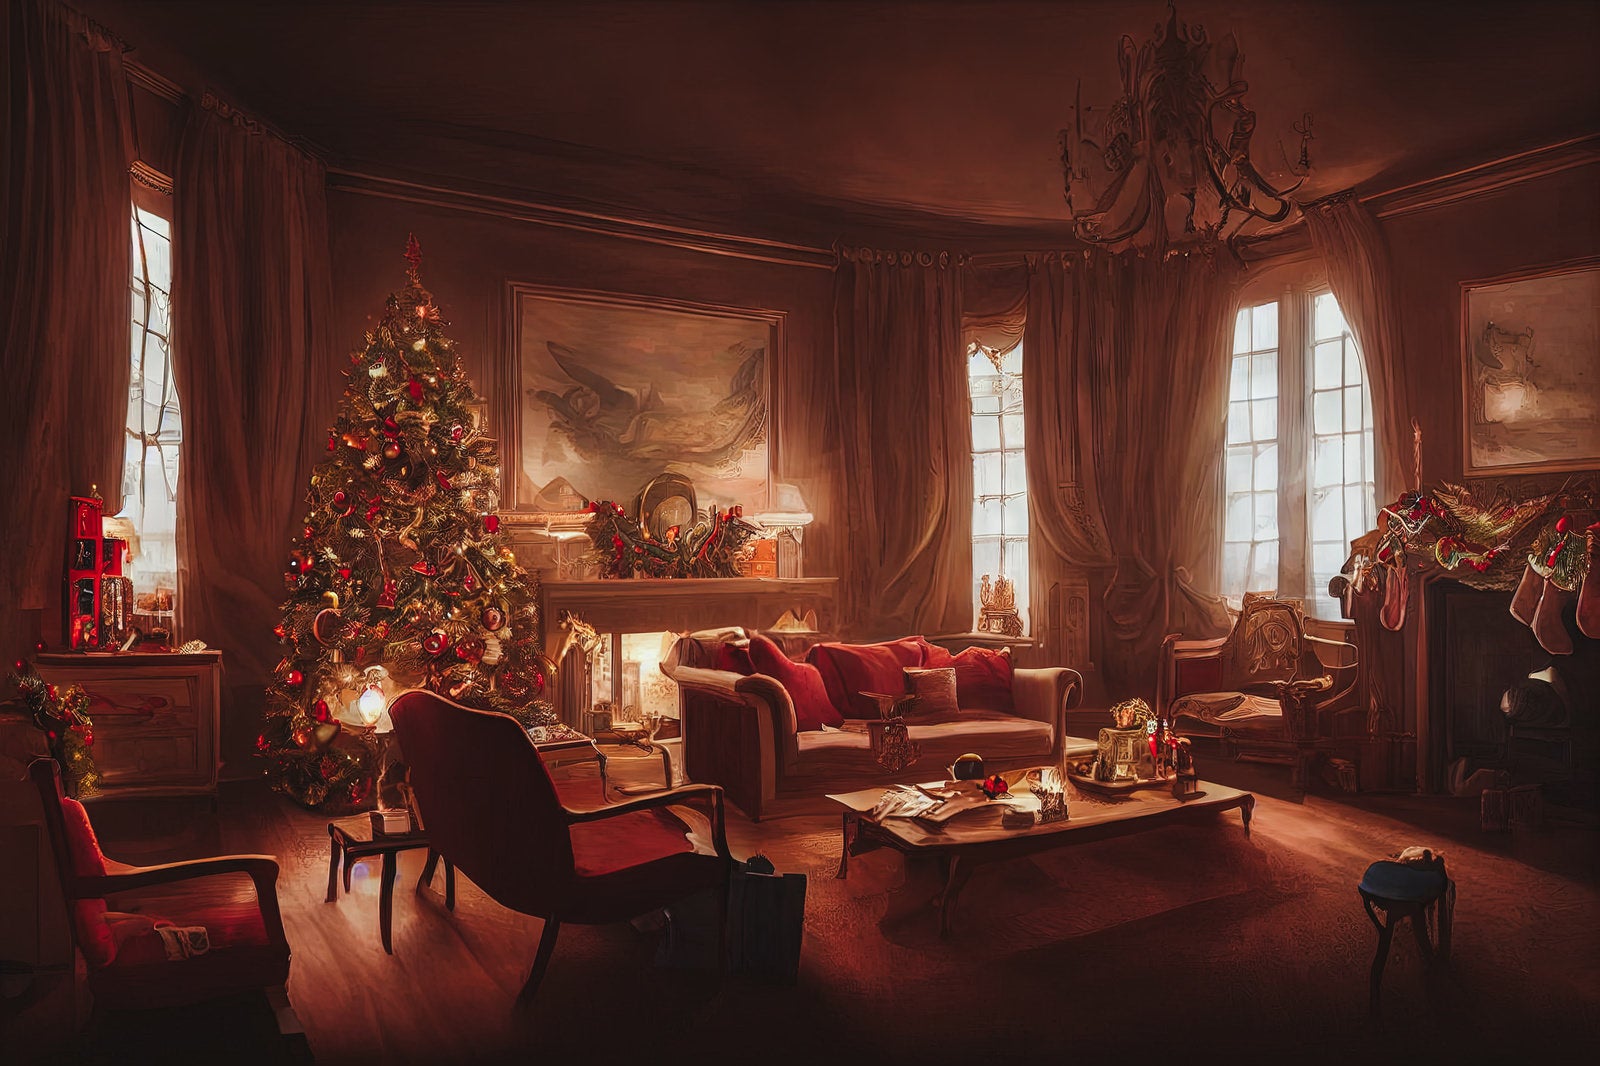 「暖炉ある部屋に飾られたクリスマスツリー」の写真